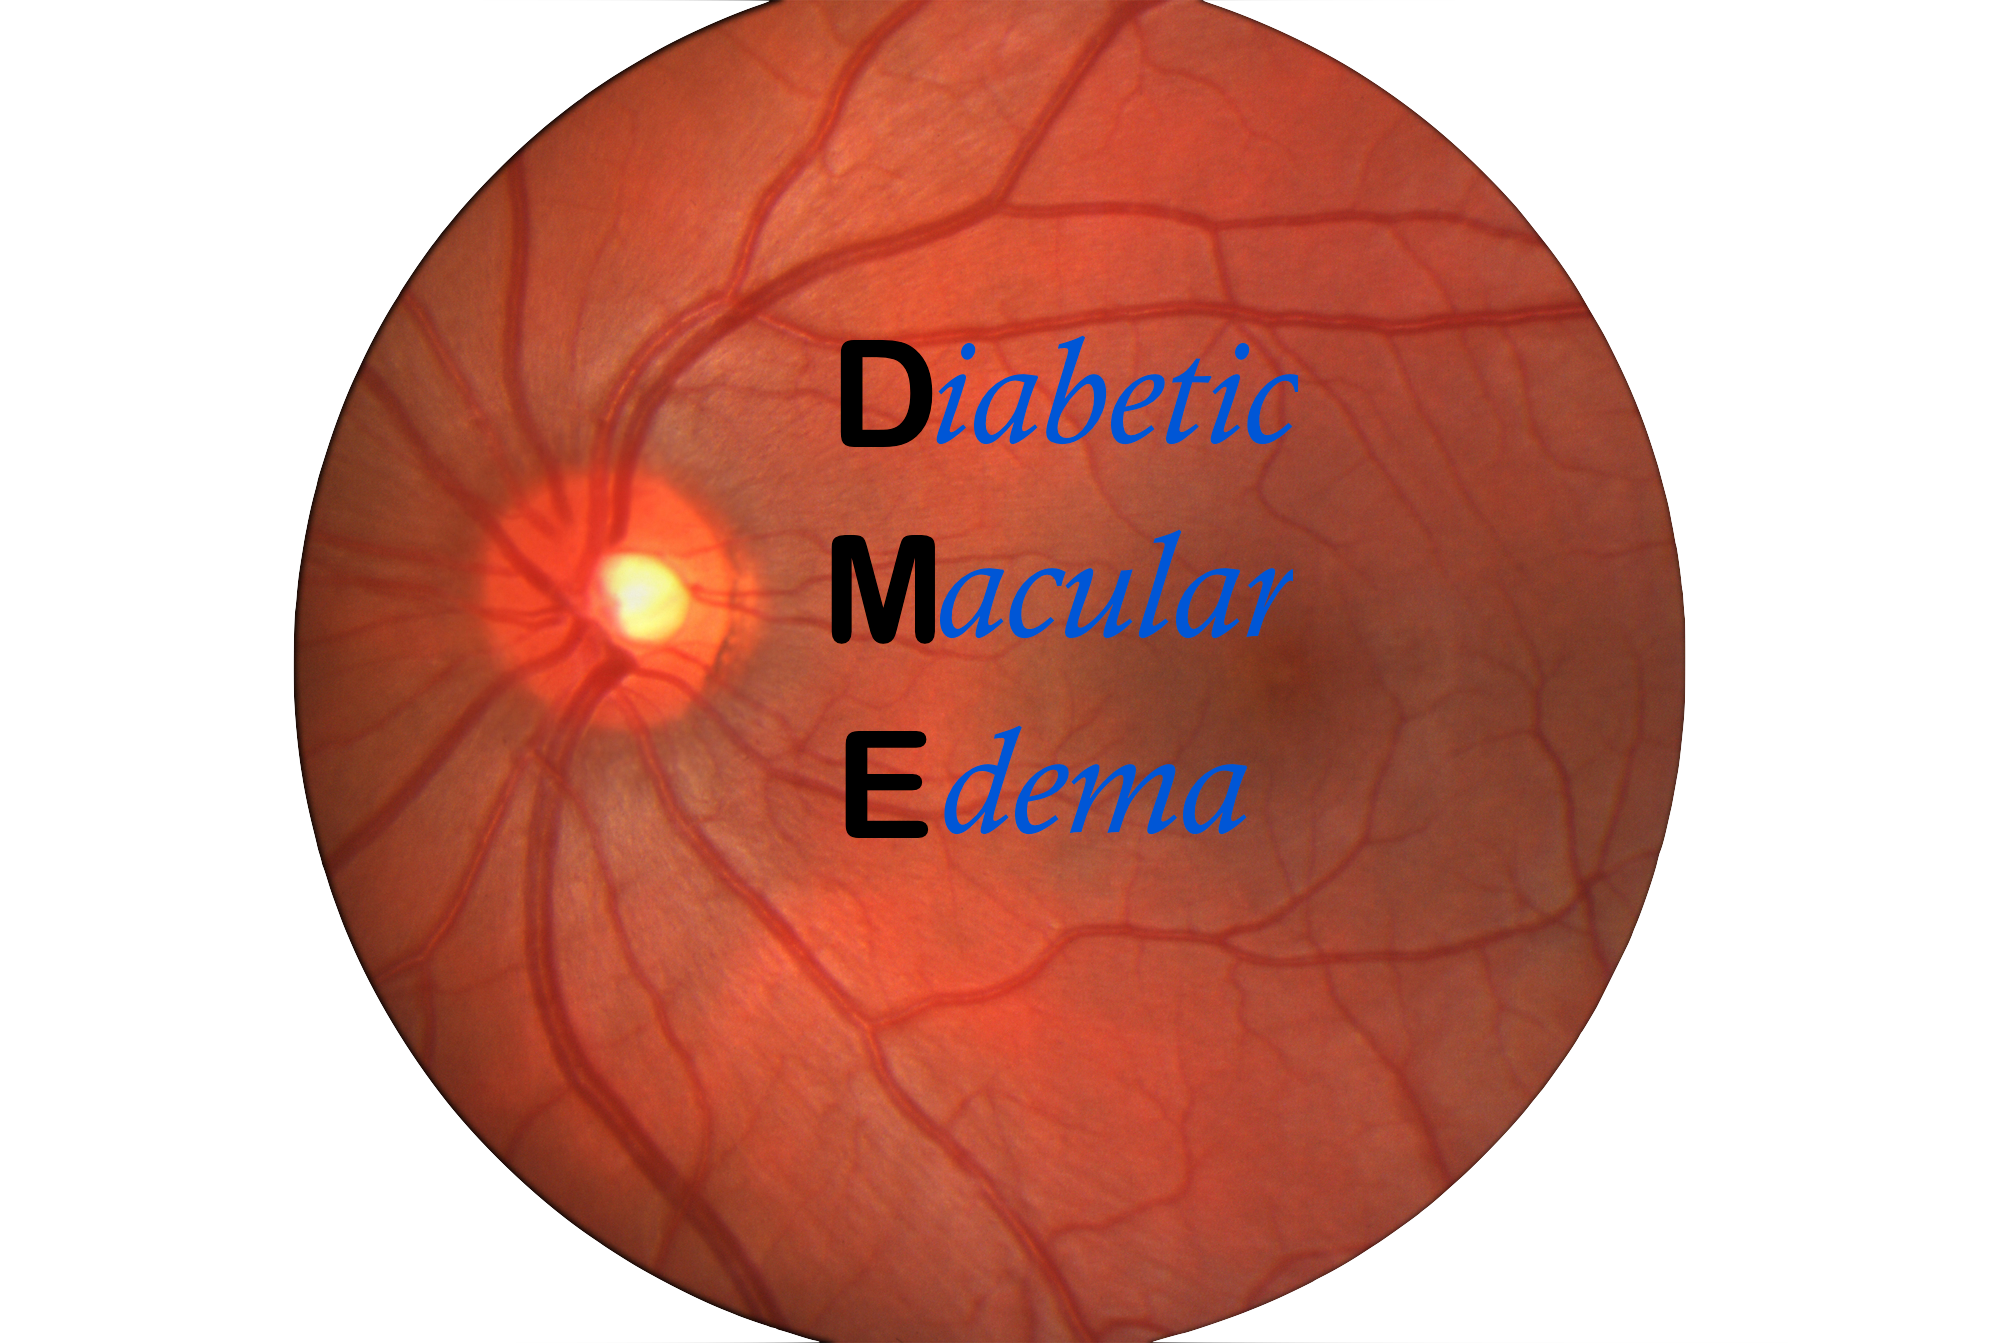 swelling in retina due to diabetes javítja a látást egy csomóval